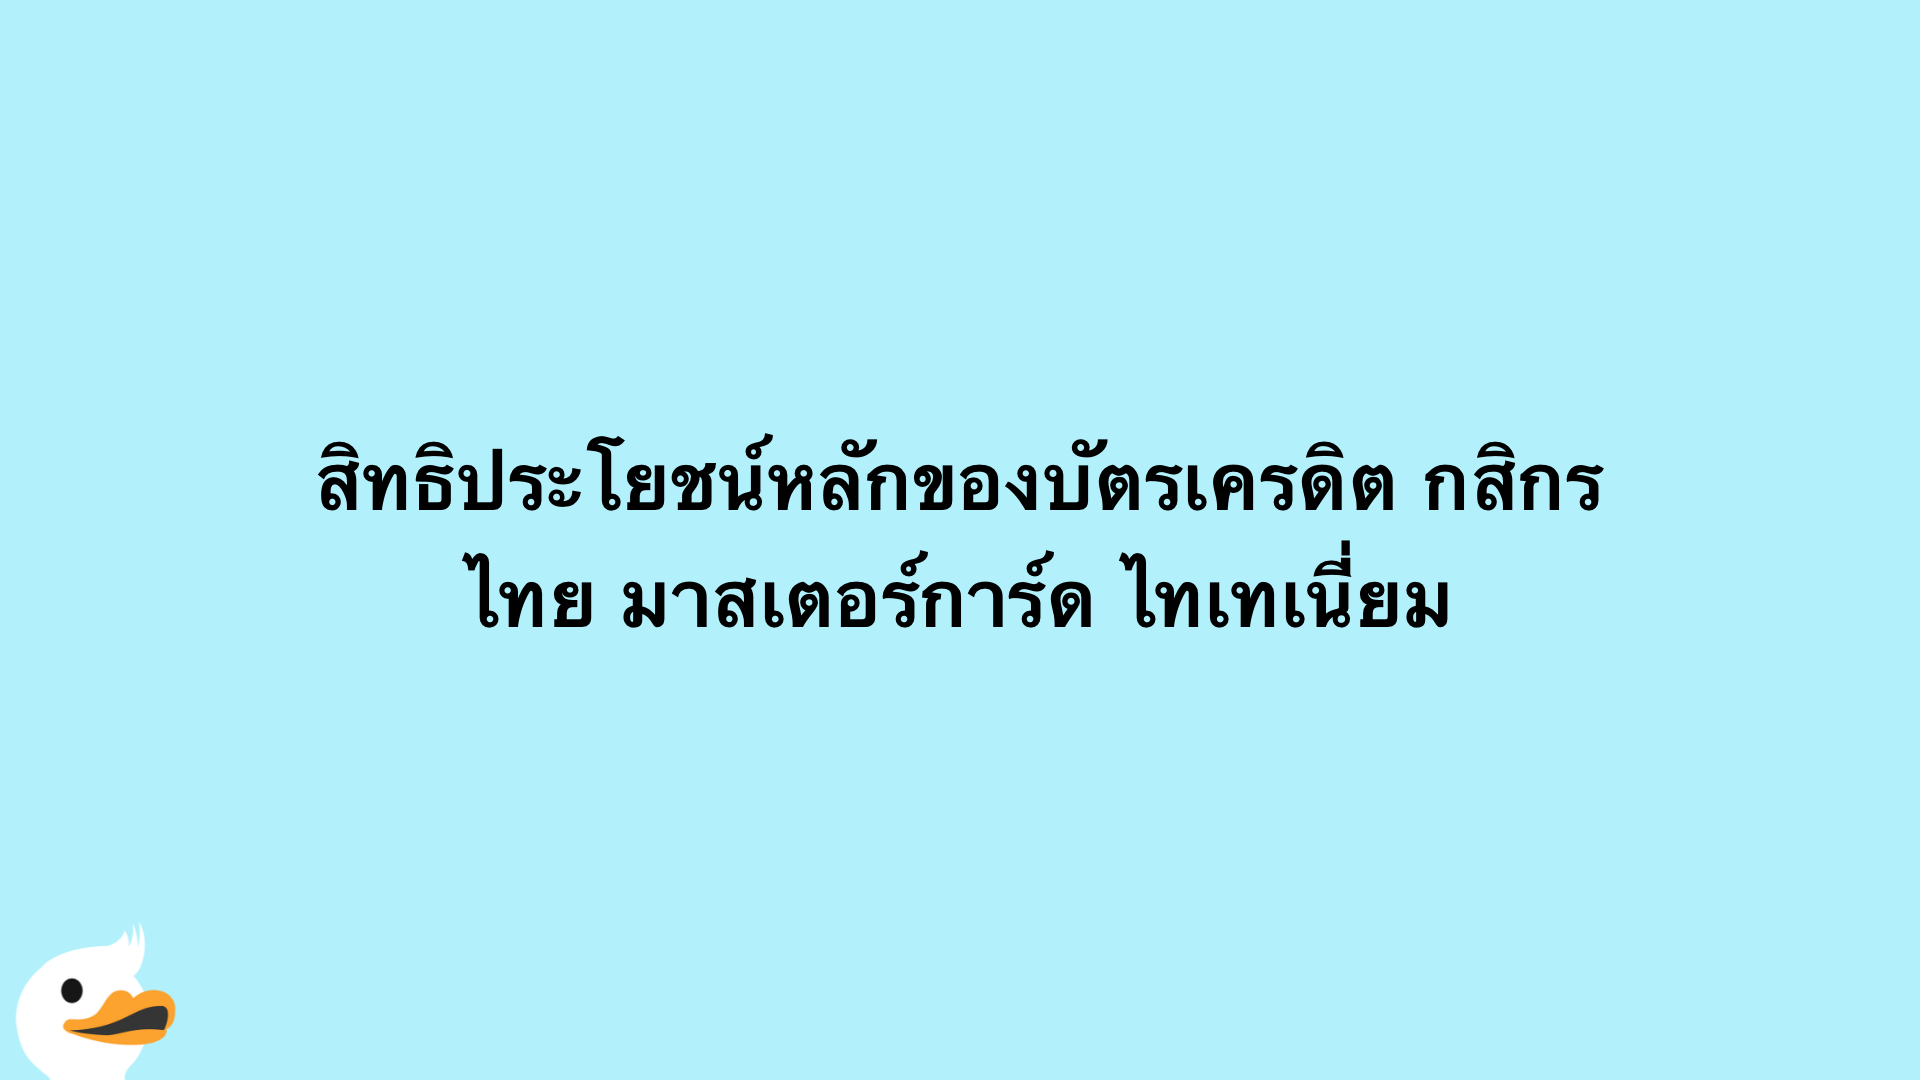 บัตรเครดิต กสิกรไทย มาสเตอร์การ์ด ไทเทเนี่ยม | ธนาคารกสิกรไทย | Moneyduck  Thailand